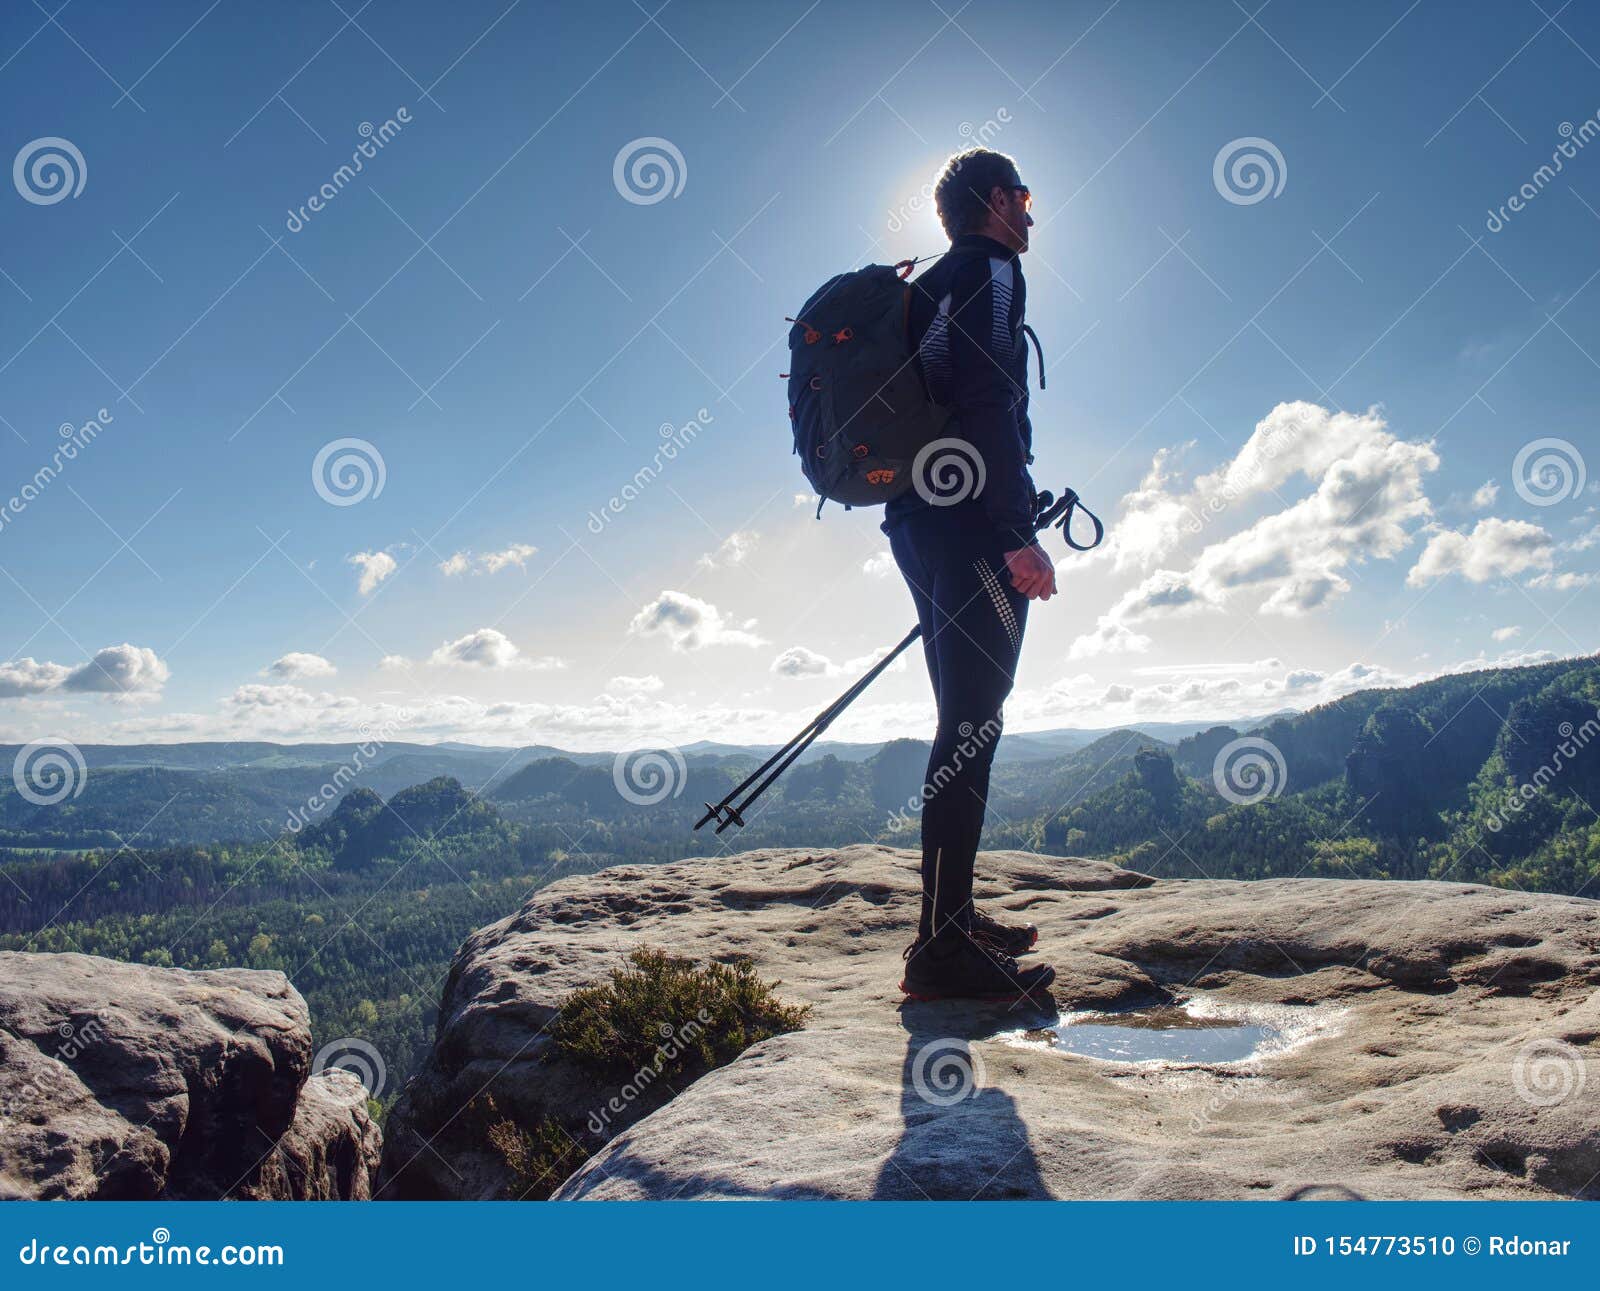 peak walk trekking pole